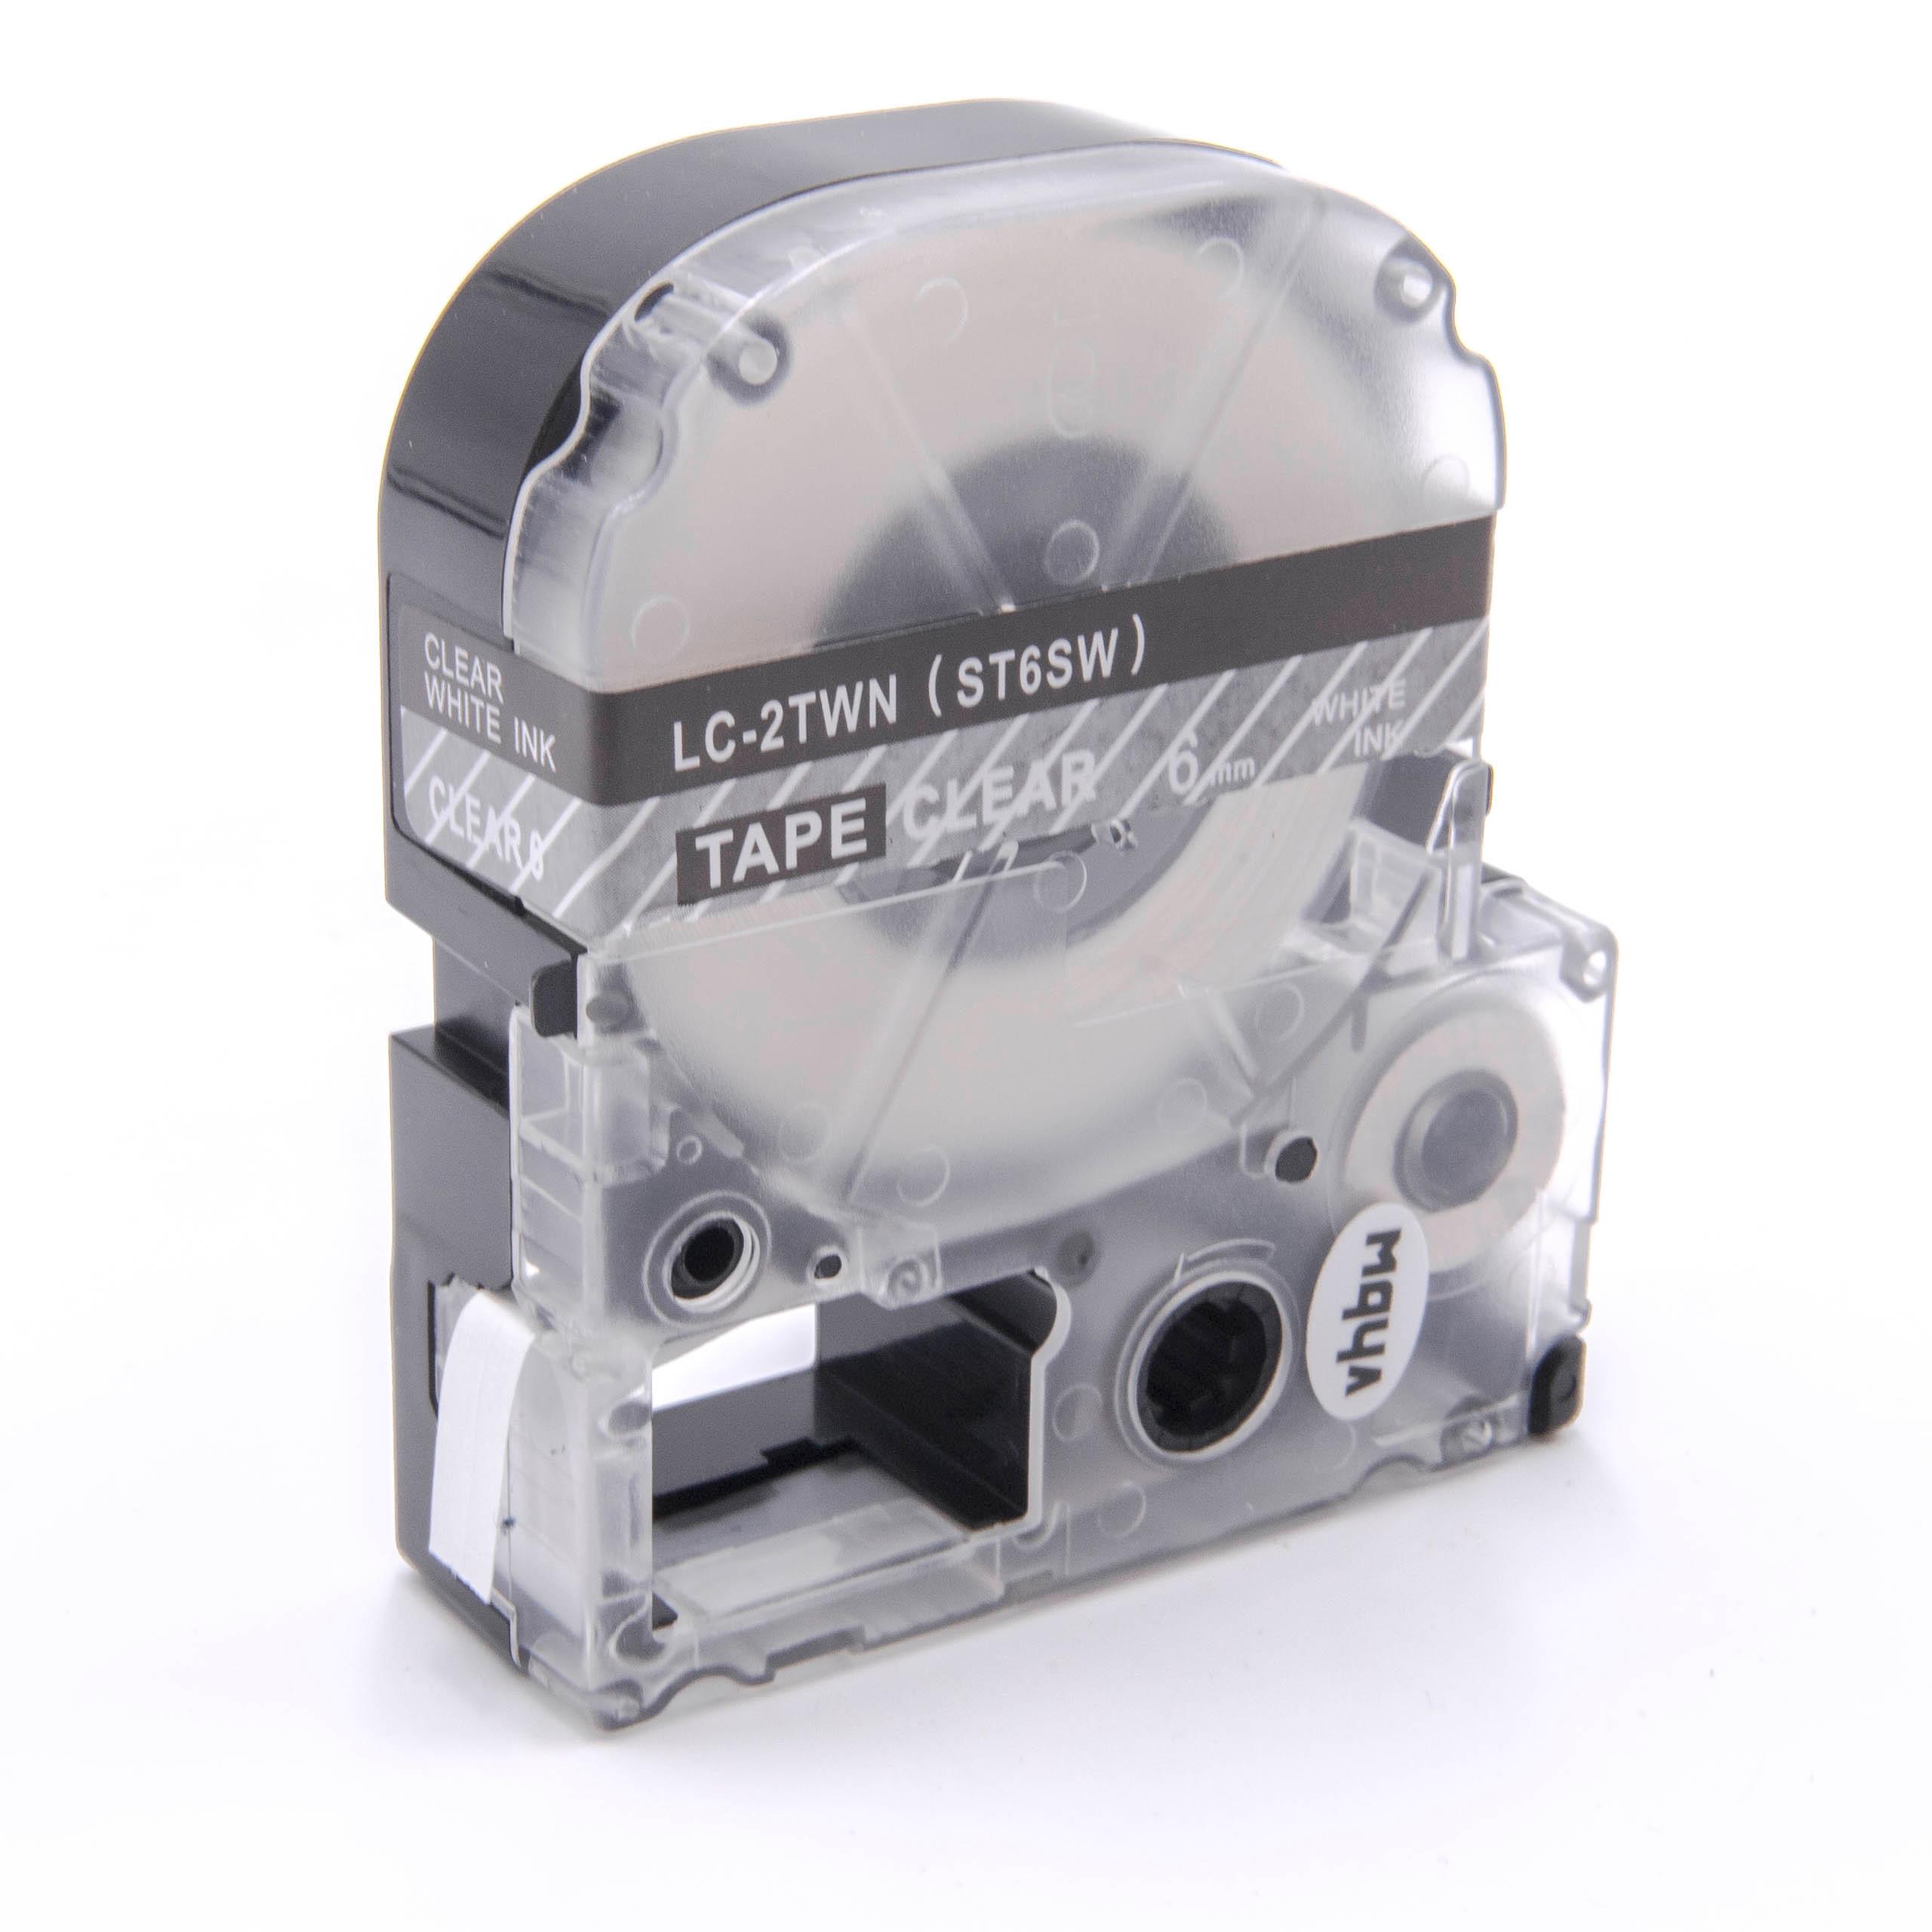 Cassetta nastro sostituisce Epson LC-2TWN per etichettatrice Epson 6mm bianco su trasparente